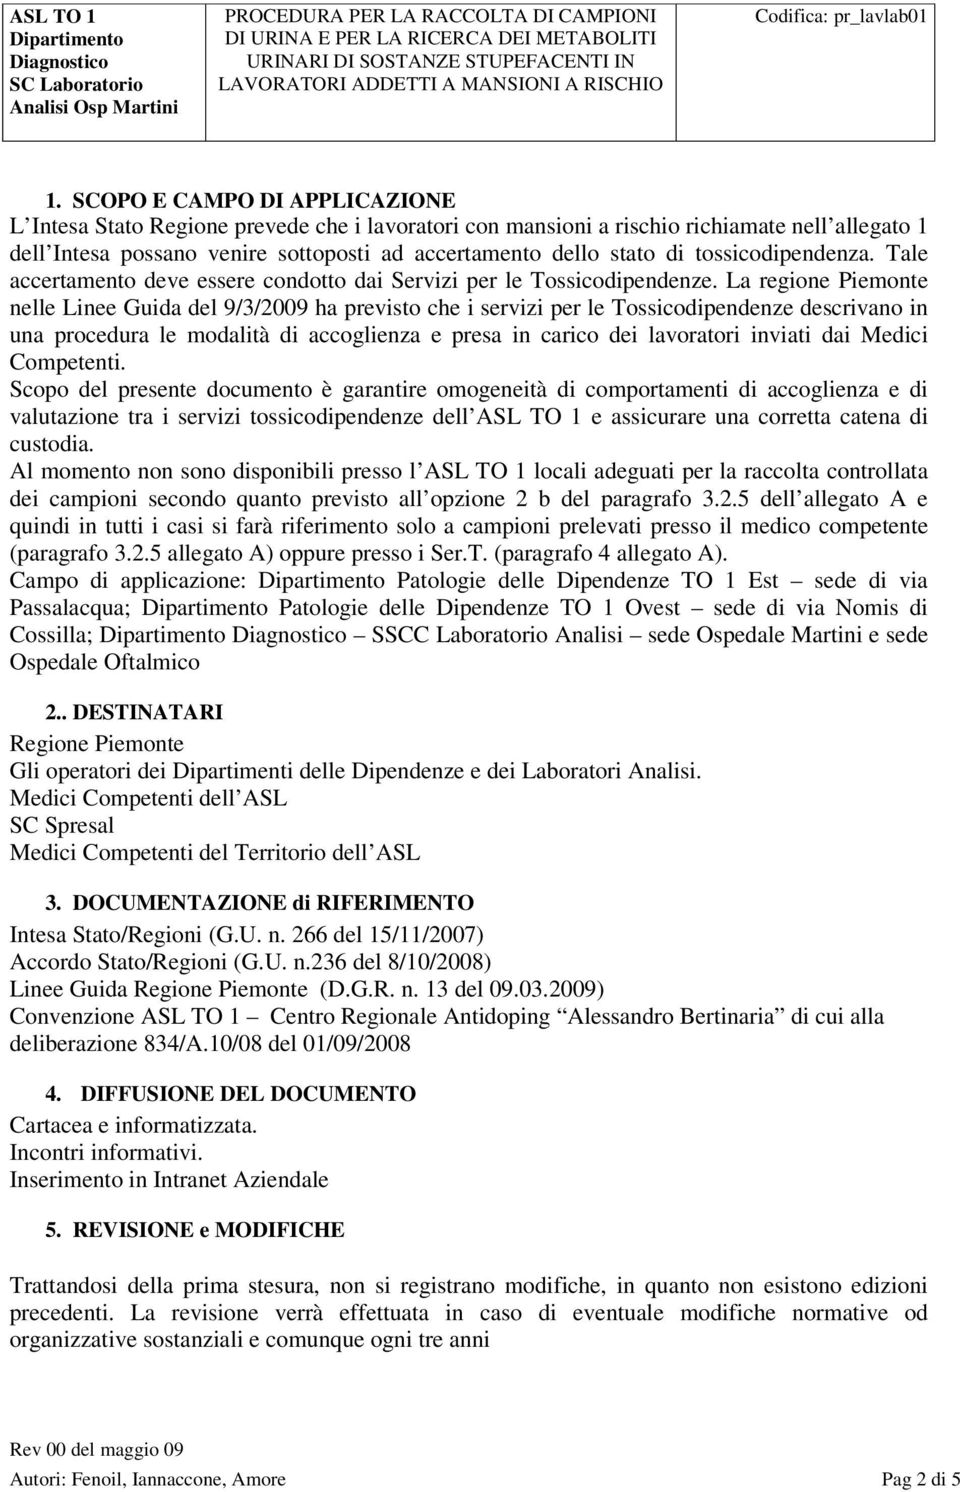 La regione Piemonte nelle Linee Guida del 9/3/2009 ha previsto che i servizi per le Tossicodipendenze descrivano in una procedura le modalità di accoglienza e presa in carico dei lavoratori inviati